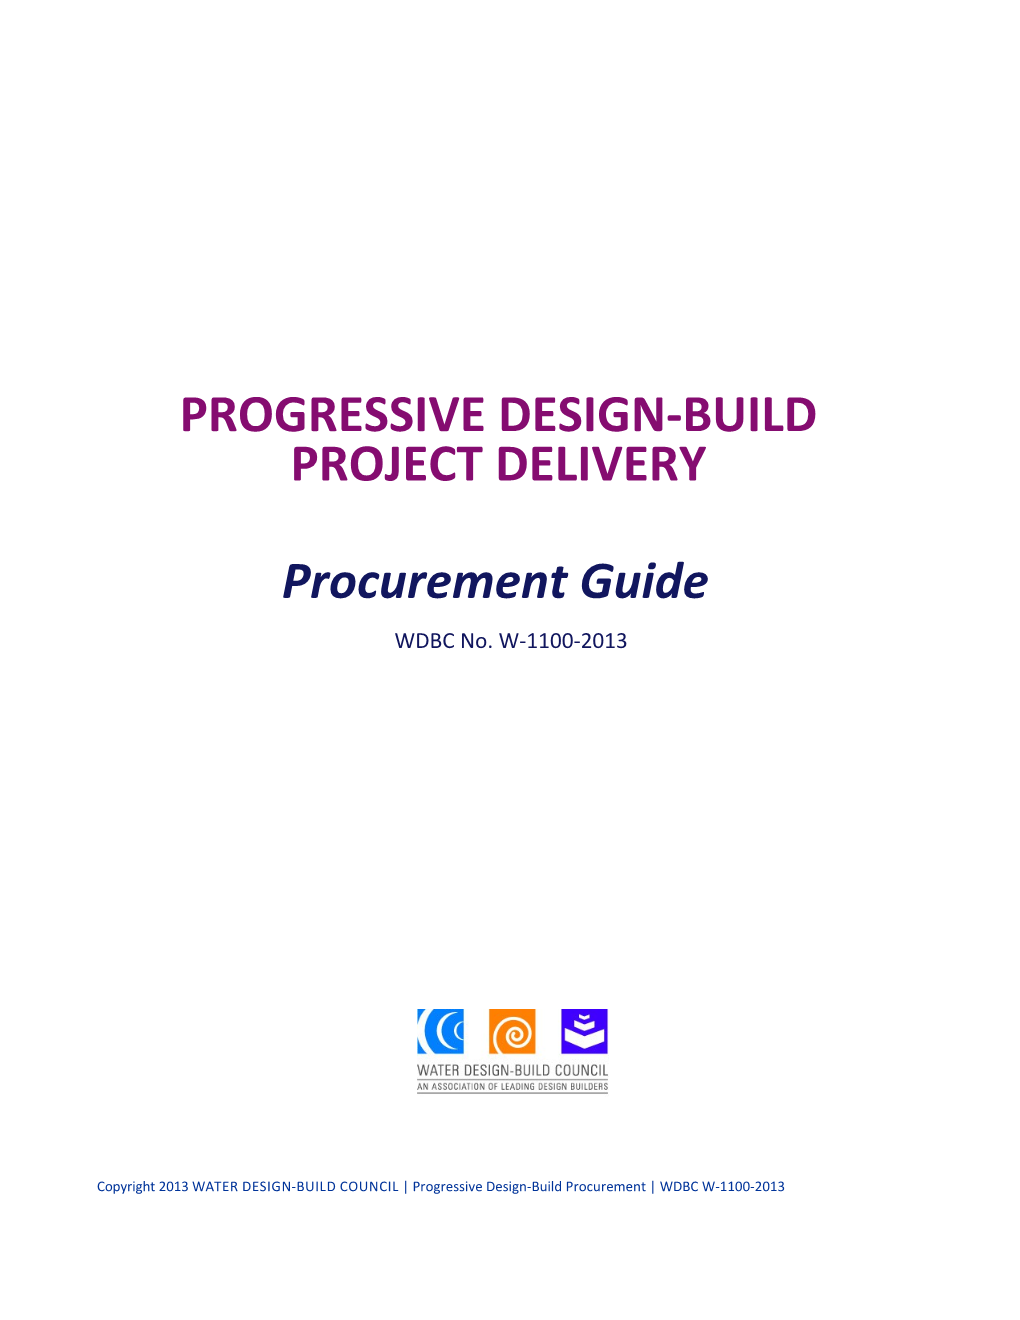 Progressive Design-Build Project Delivery